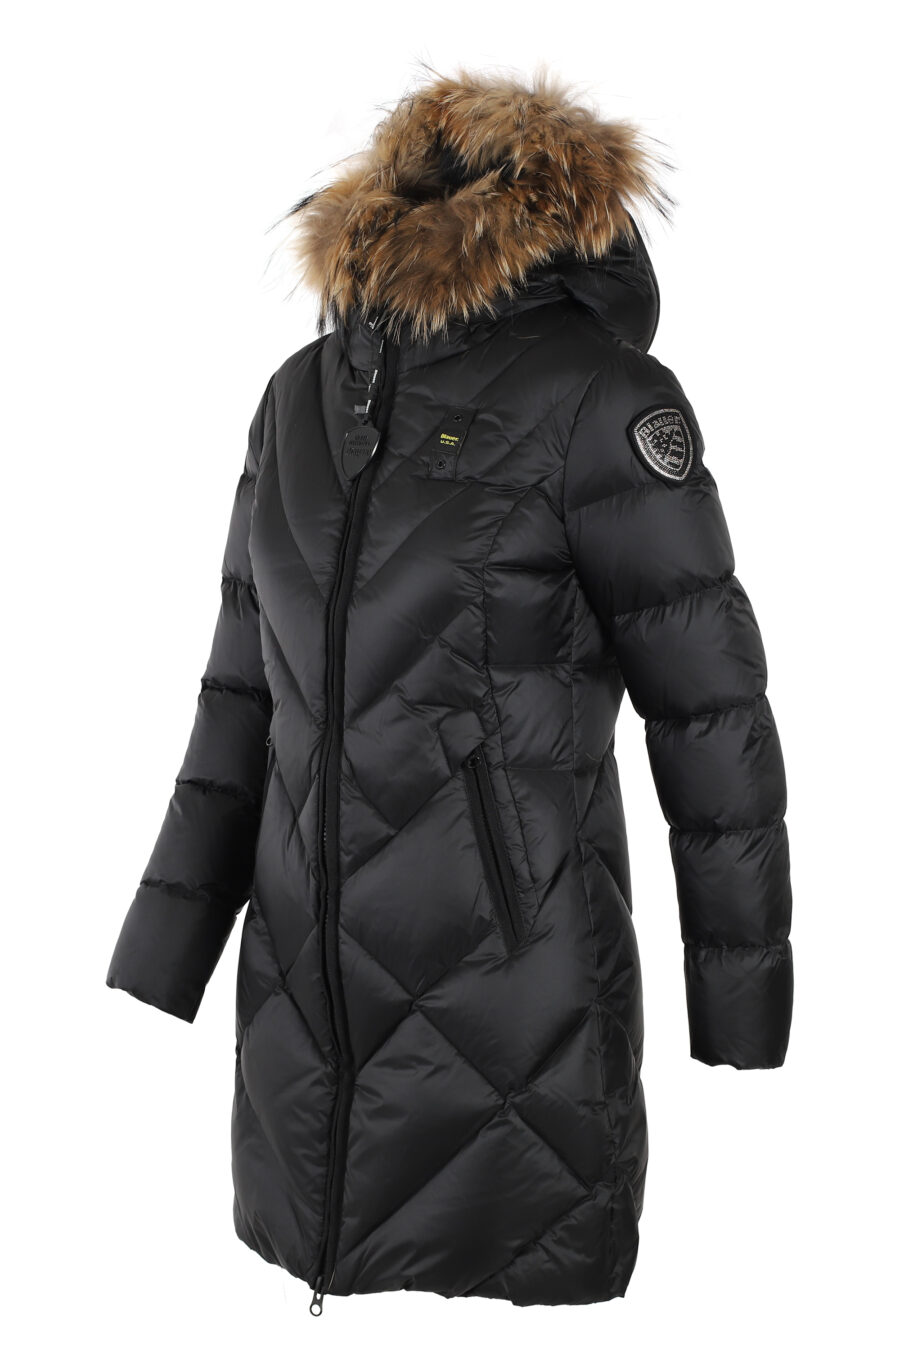 Lange schwarze Jacke mit Fellkapuze und braunem Futter - IMG 4990